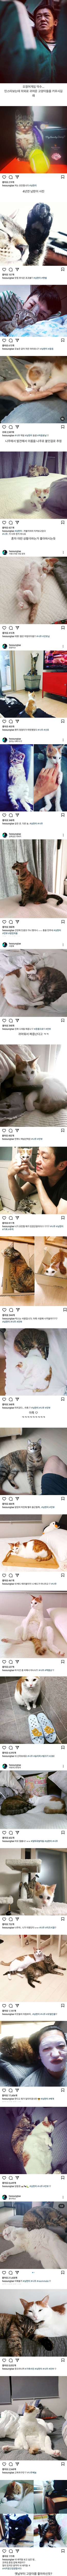 썸네일-배우 허성태네 고양이들-이미지